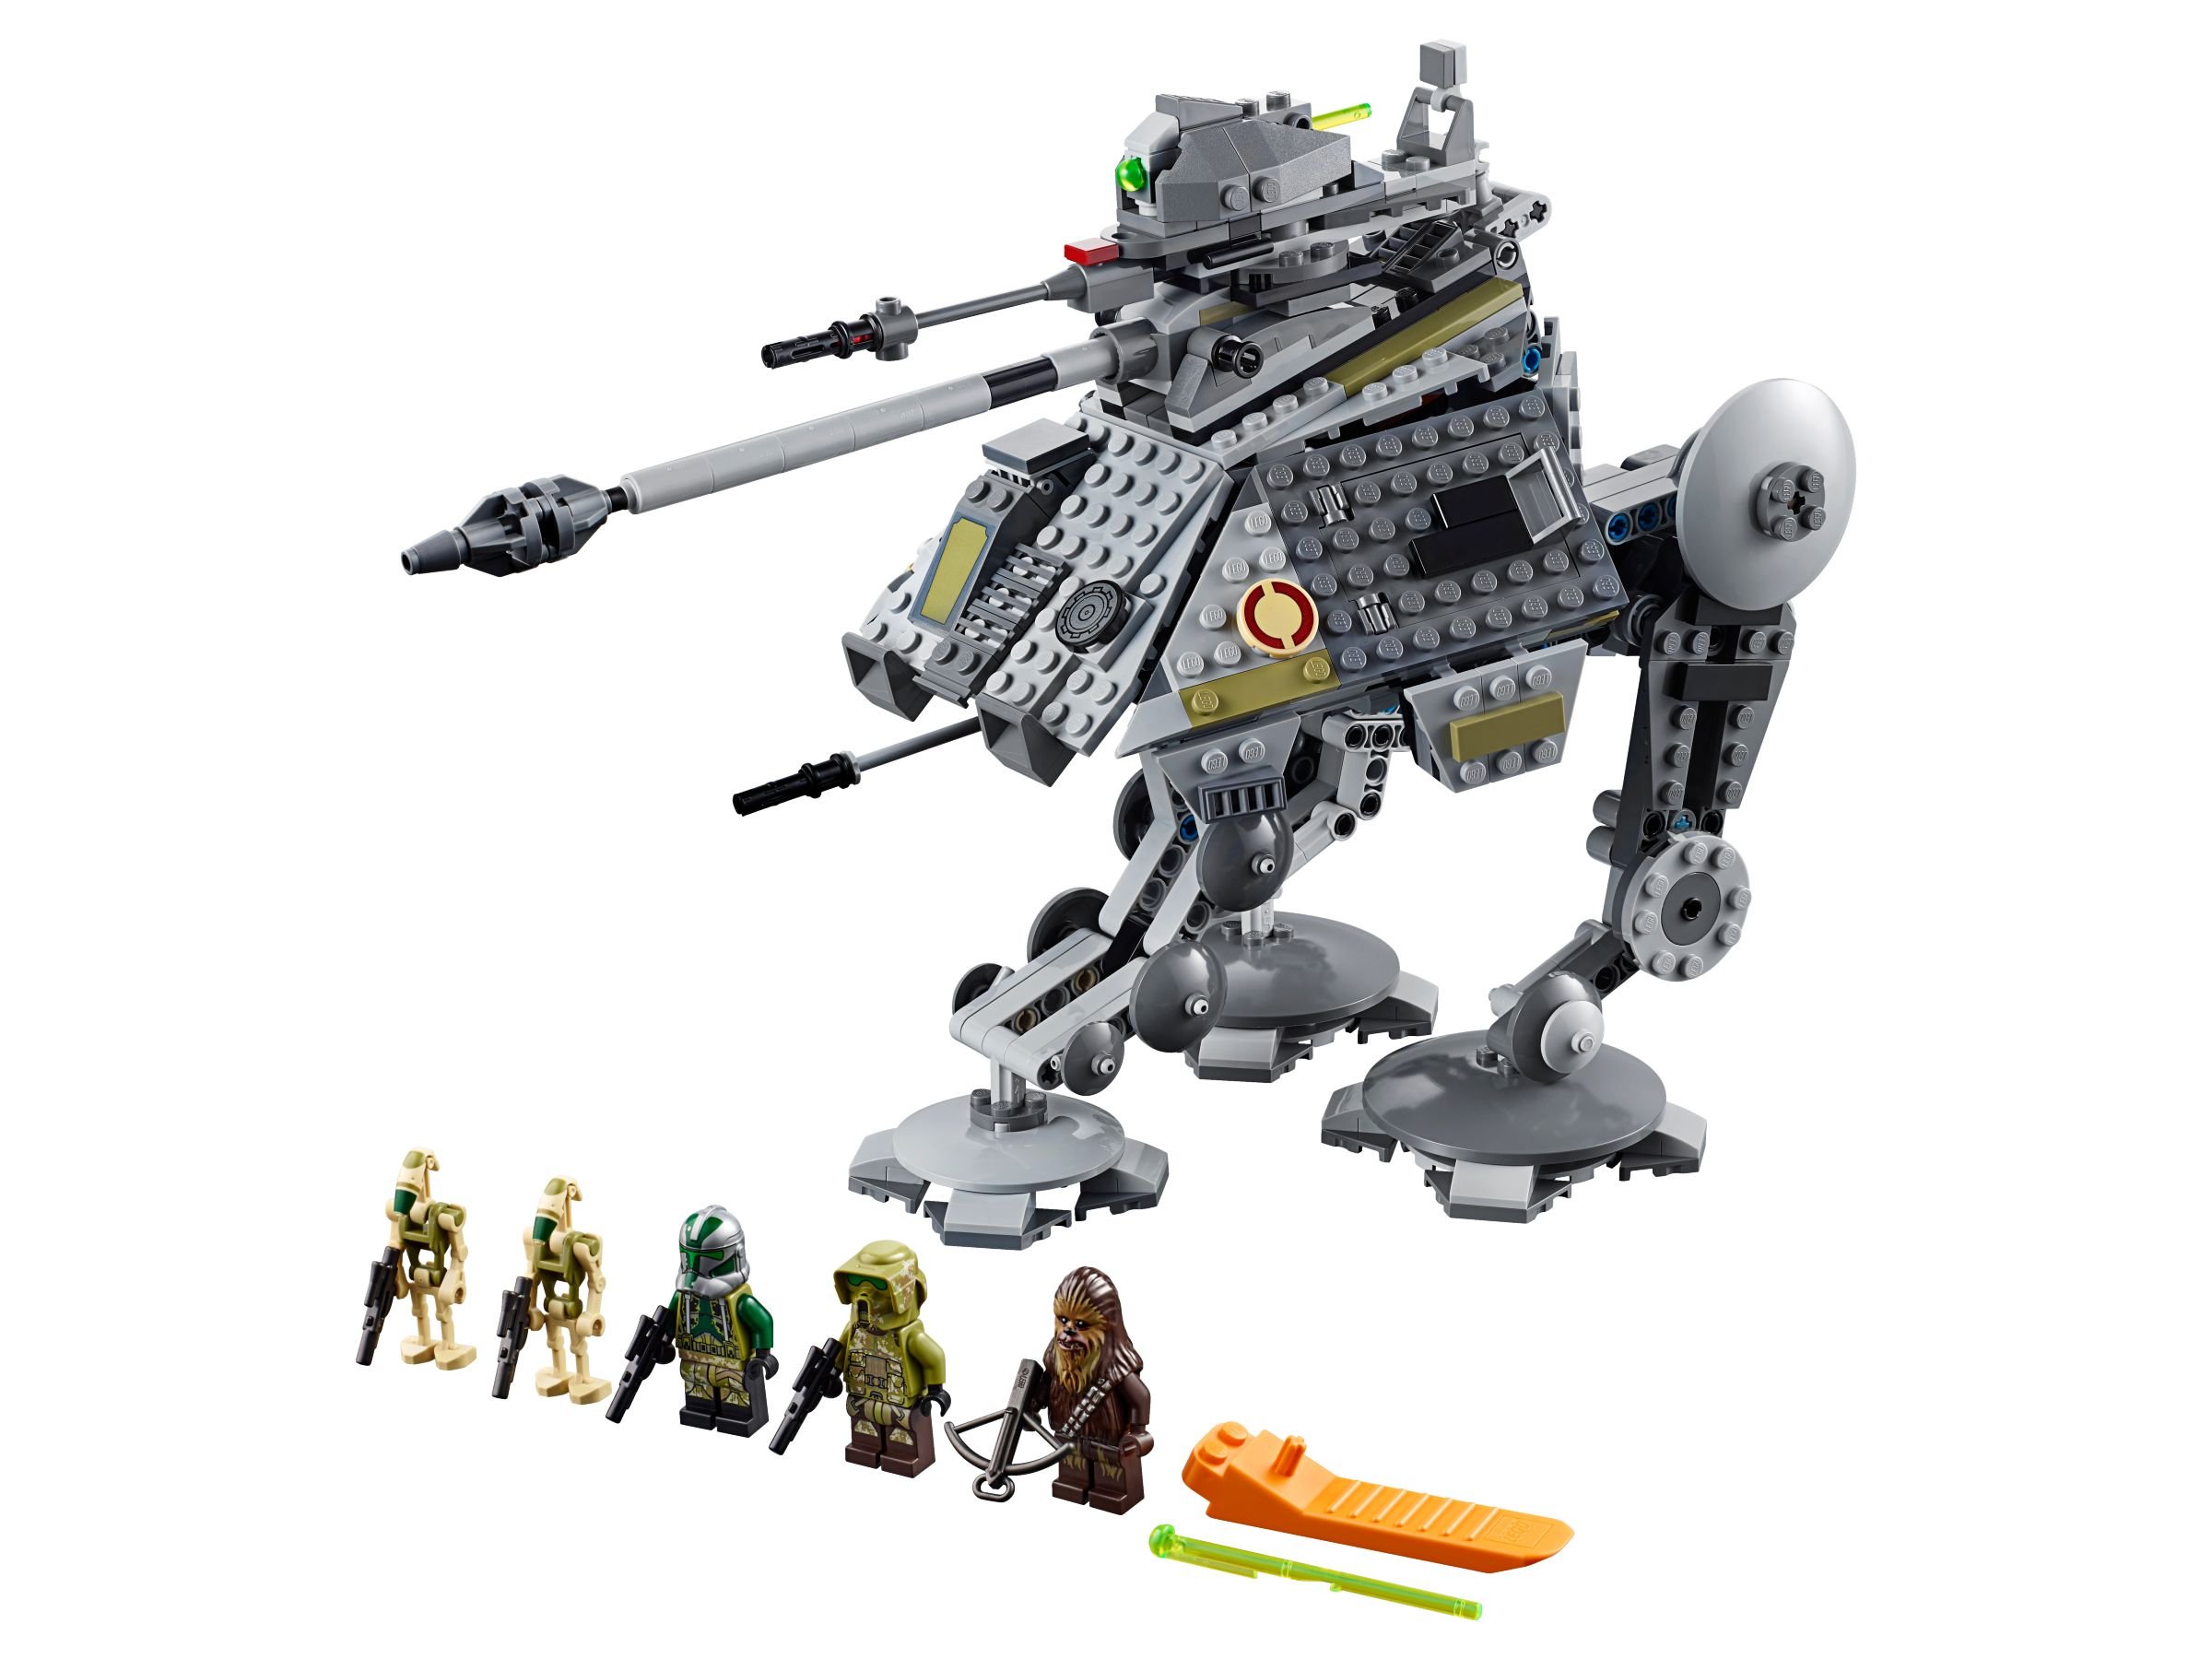 LEGO Star Wars 75234 AT-AP Walker LEGO_75234.jpg